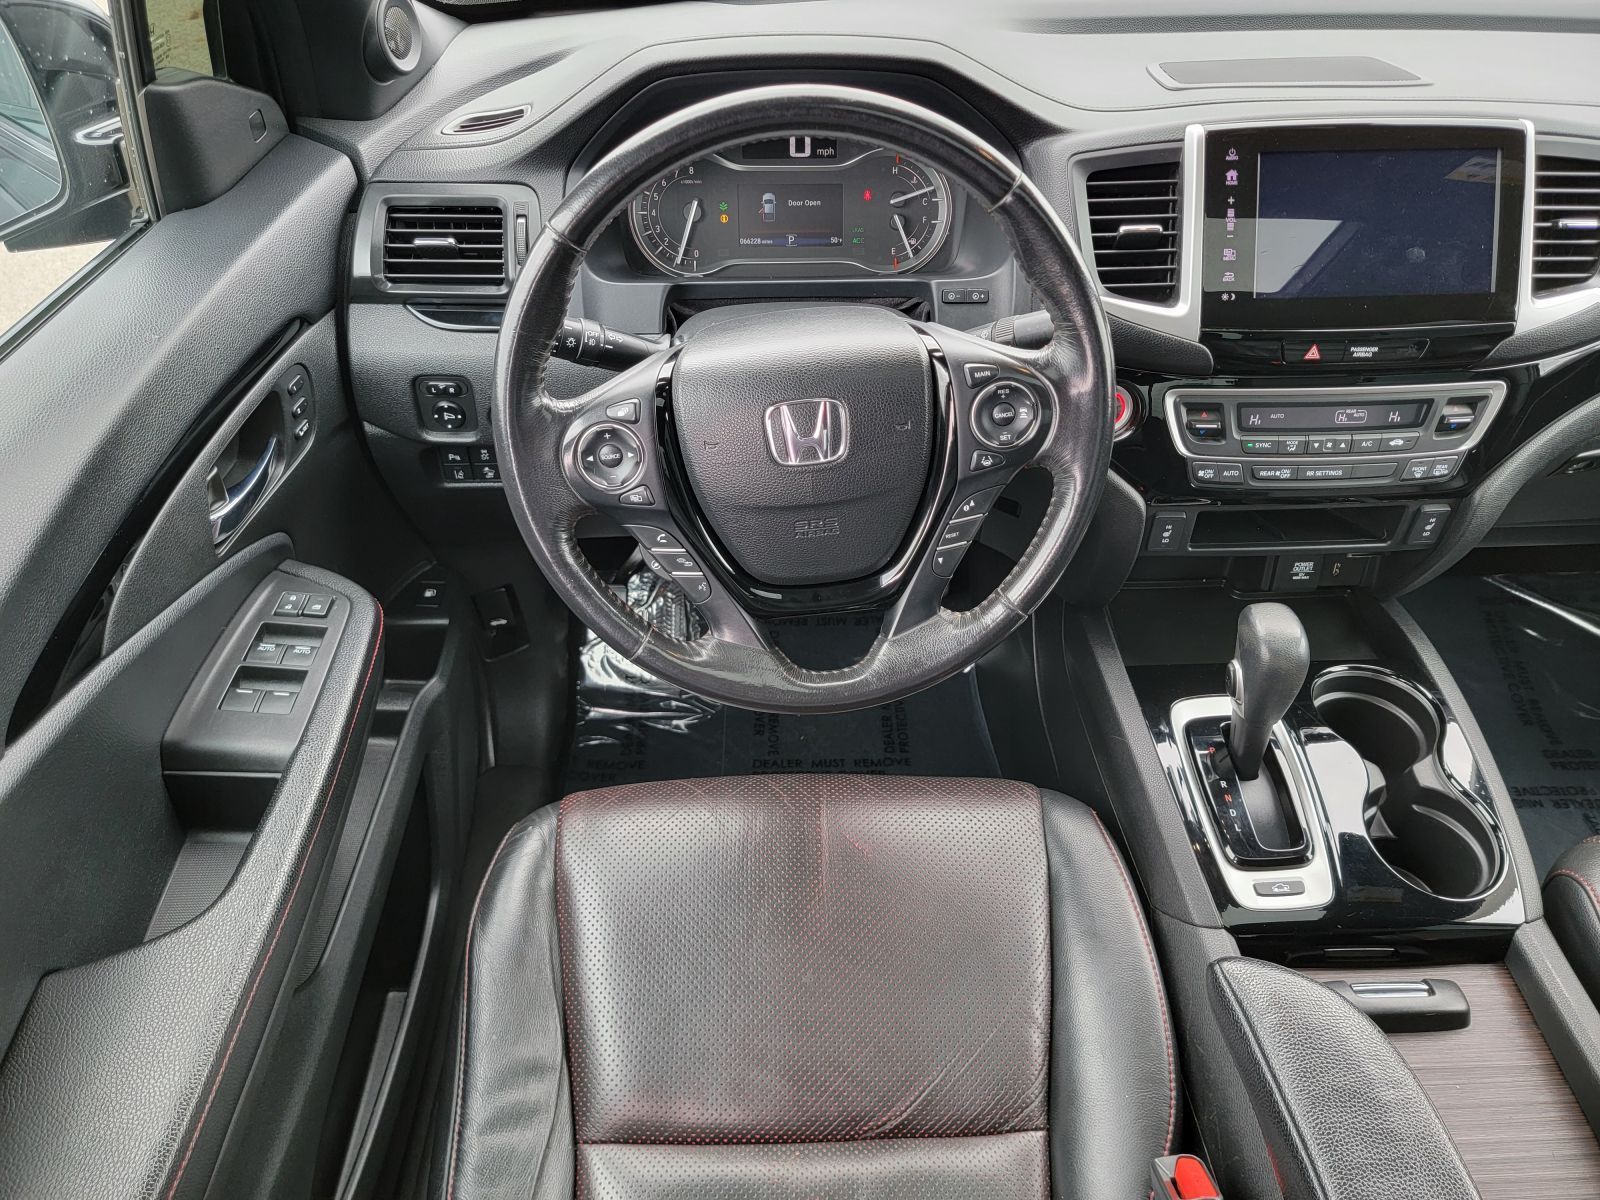 Used, 2018 Honda Ridgeline Black Edition, Black, P0461-20